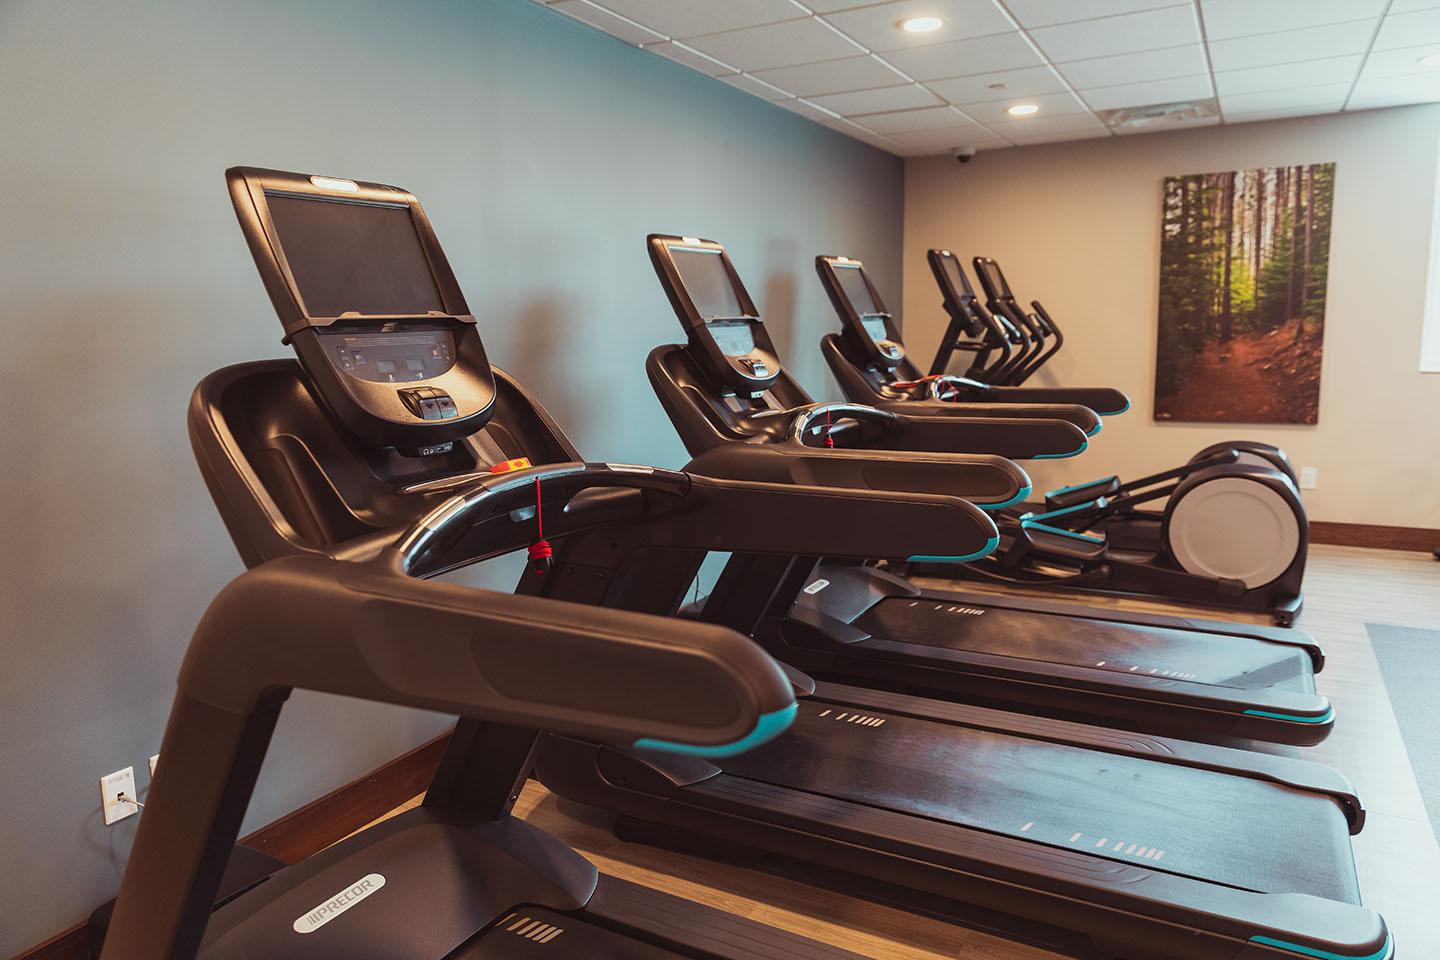 Fitness Center treadmills